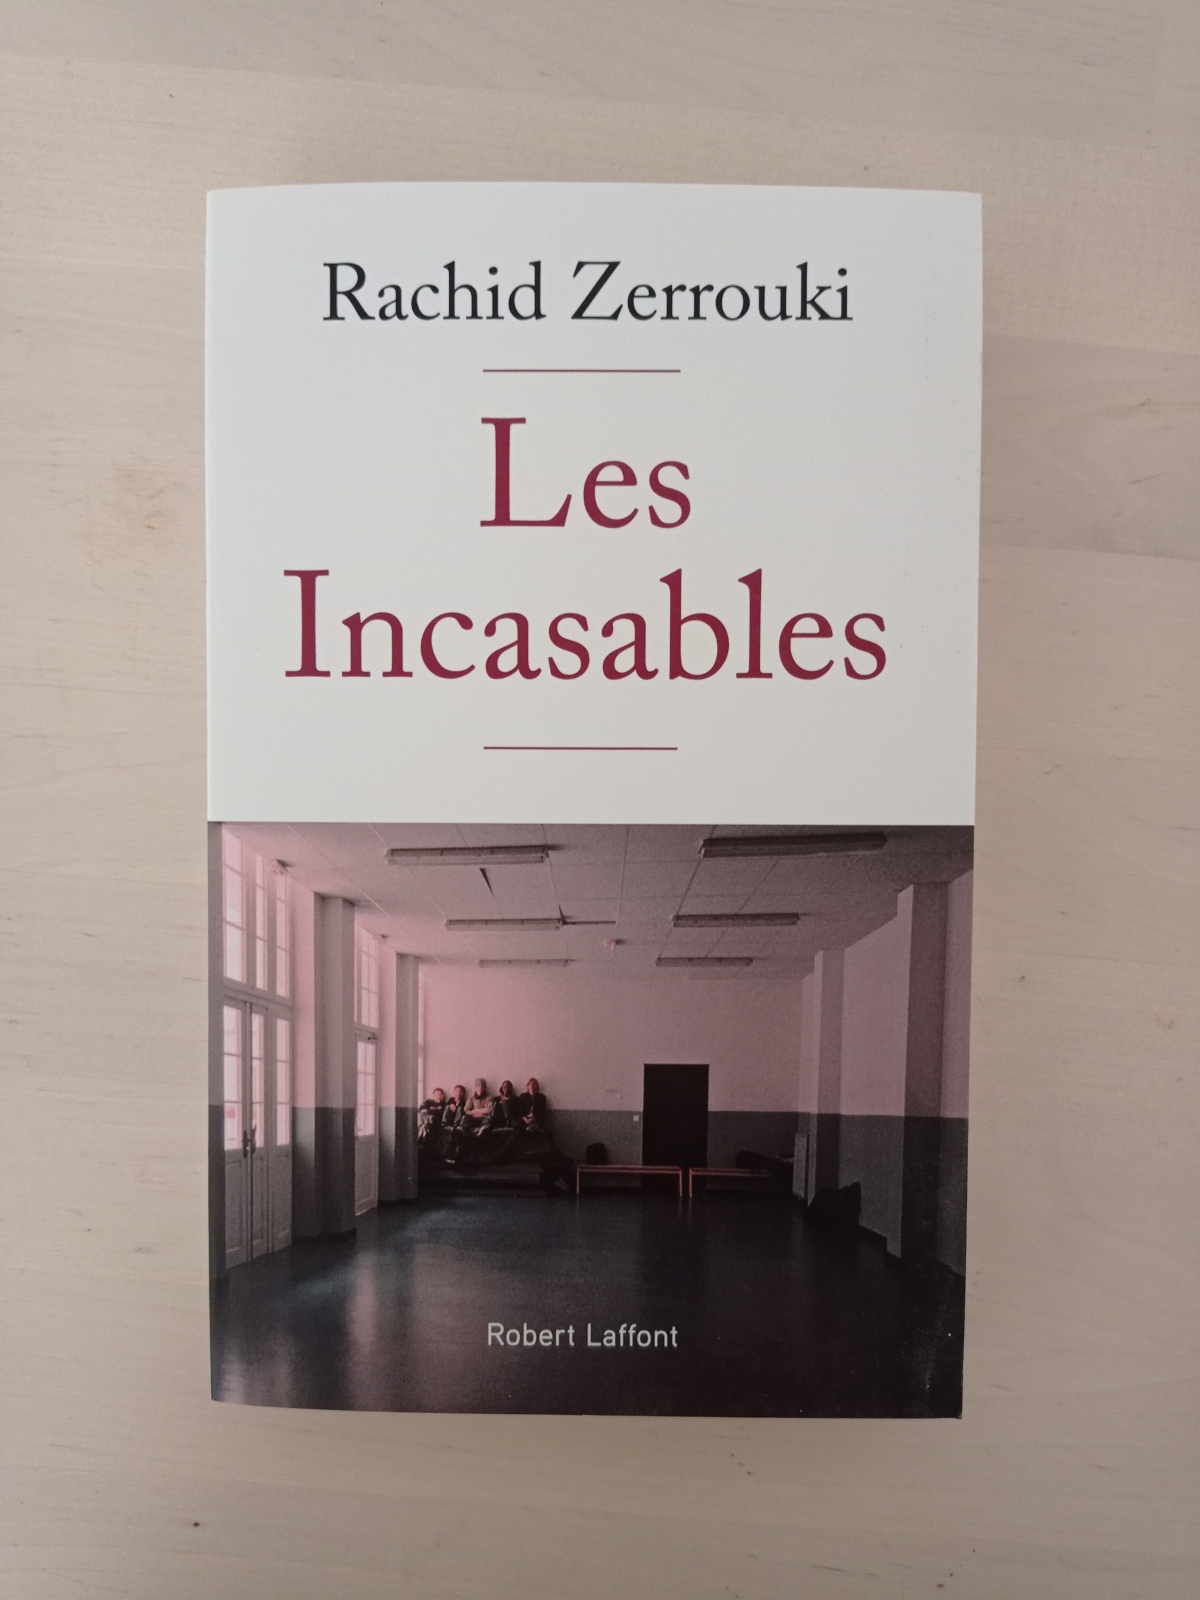 Les incasables / Rachid Zerrouki